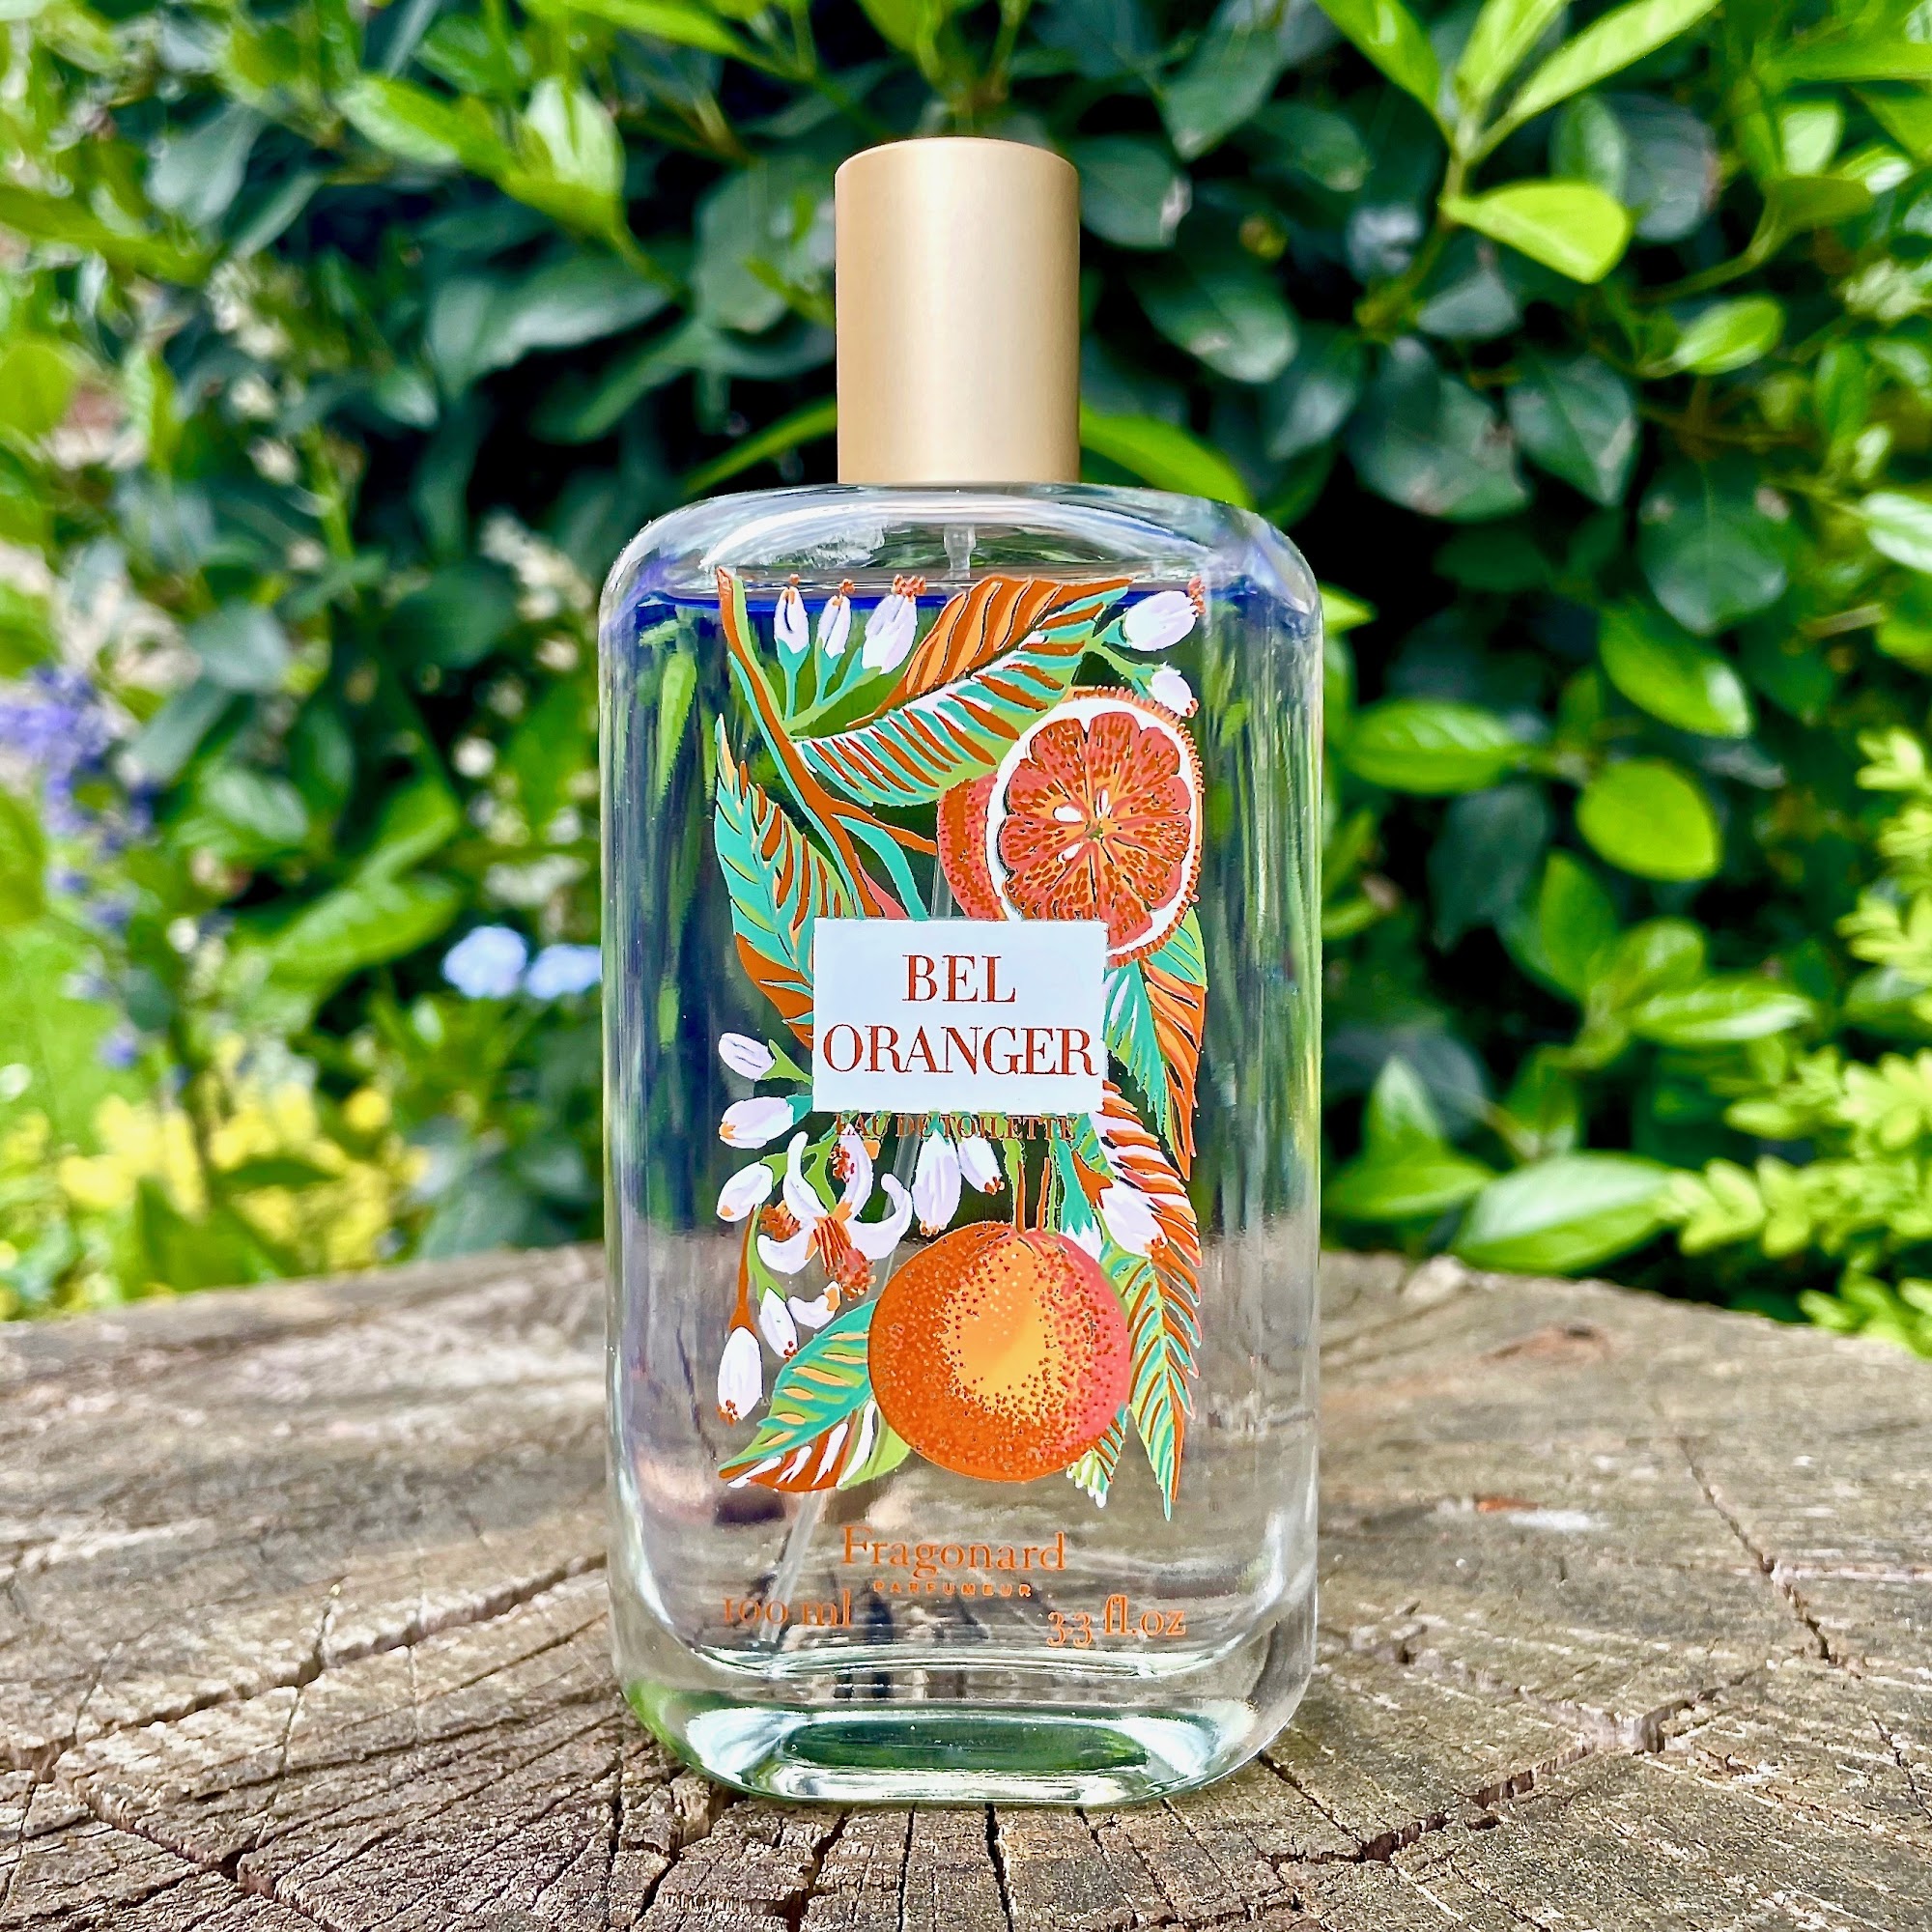 Bottle of Bel Oranger perfume by Fragonard